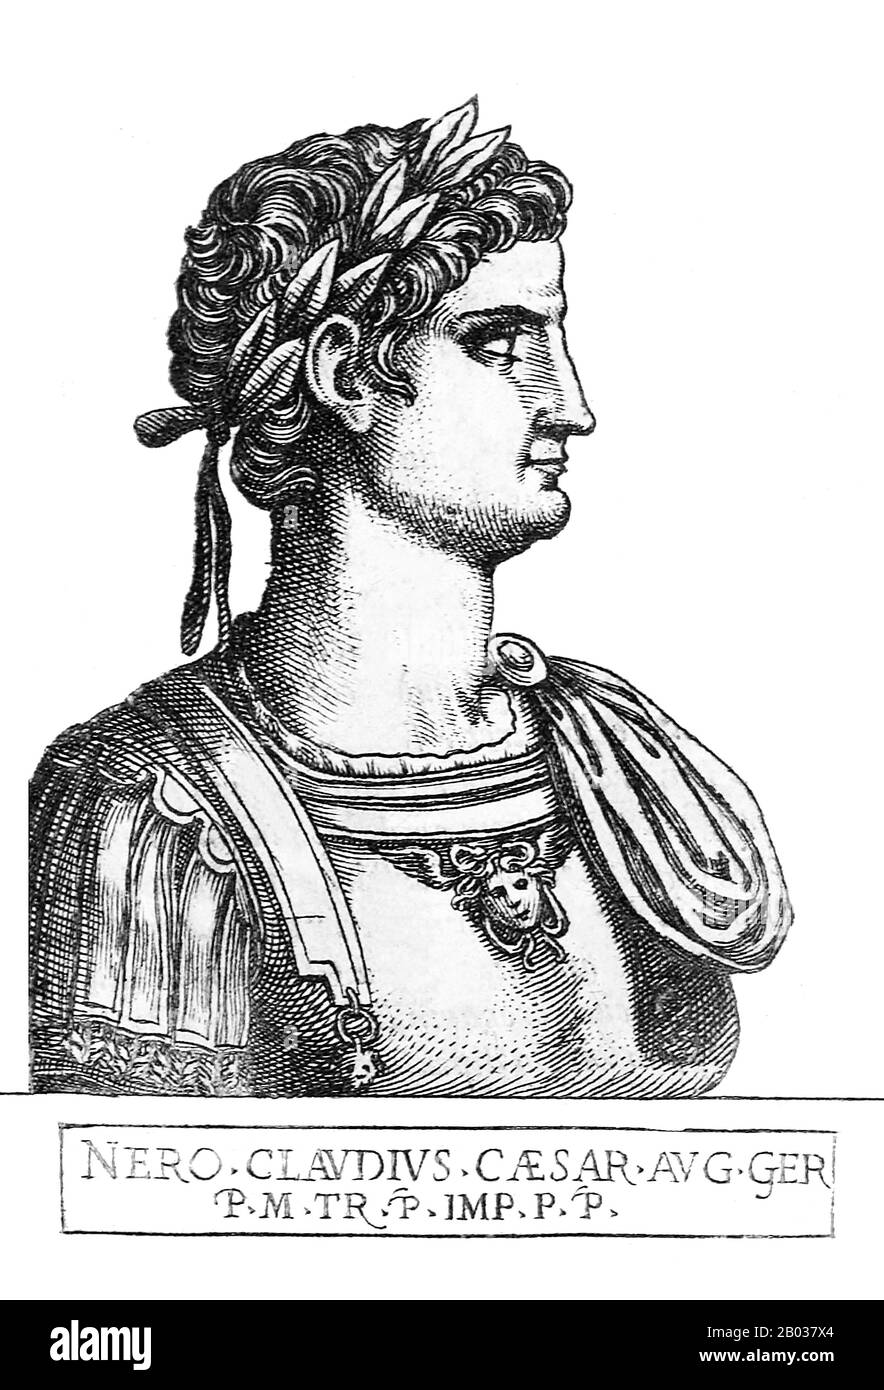 Nato Lucius Domitius Ahenobarbus, Nerone era l'unico figlio di Agrippina Il Giovane, che in seguito avrebbe sposato il suo grande zio imperatore Claudio. Claudius adottò Nero e fu nominato erede e successore accanto al figlio di Claudius, Brittanicus. Nerone aderì al trono dopo la morte di Claudio nel 54 d.C., forse avvelenato dalle mani della madre di Nerone. Il regno di Nerone è infame per la sua corruzione, tirannia e stravaganza, così come le sue molte esecuzioni, tra cui quella di sua madre e l'avvelenamento del suo fratellastro Britannicus subito dopo l'inizio del suo dominio. Il suo marchio più infame sulla storia, tuttavia, Foto Stock